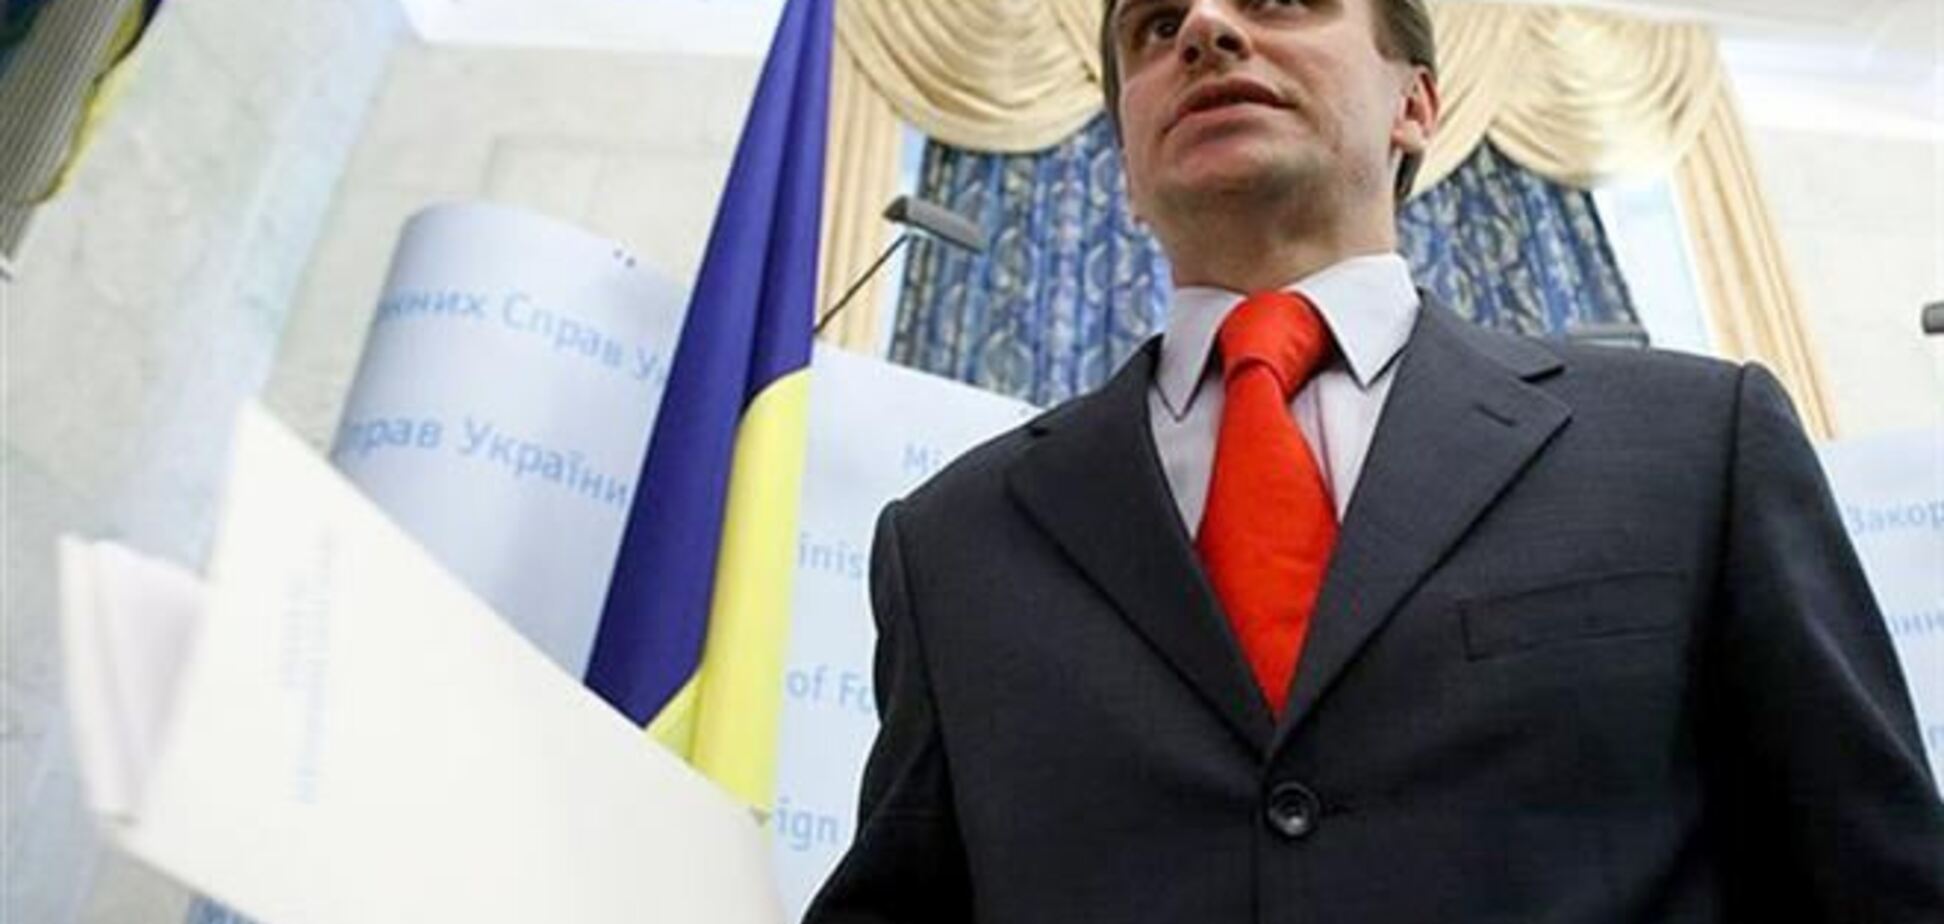 ЄС дав Росії 48 годин на деескалацію конфлікту - Єлісєєв